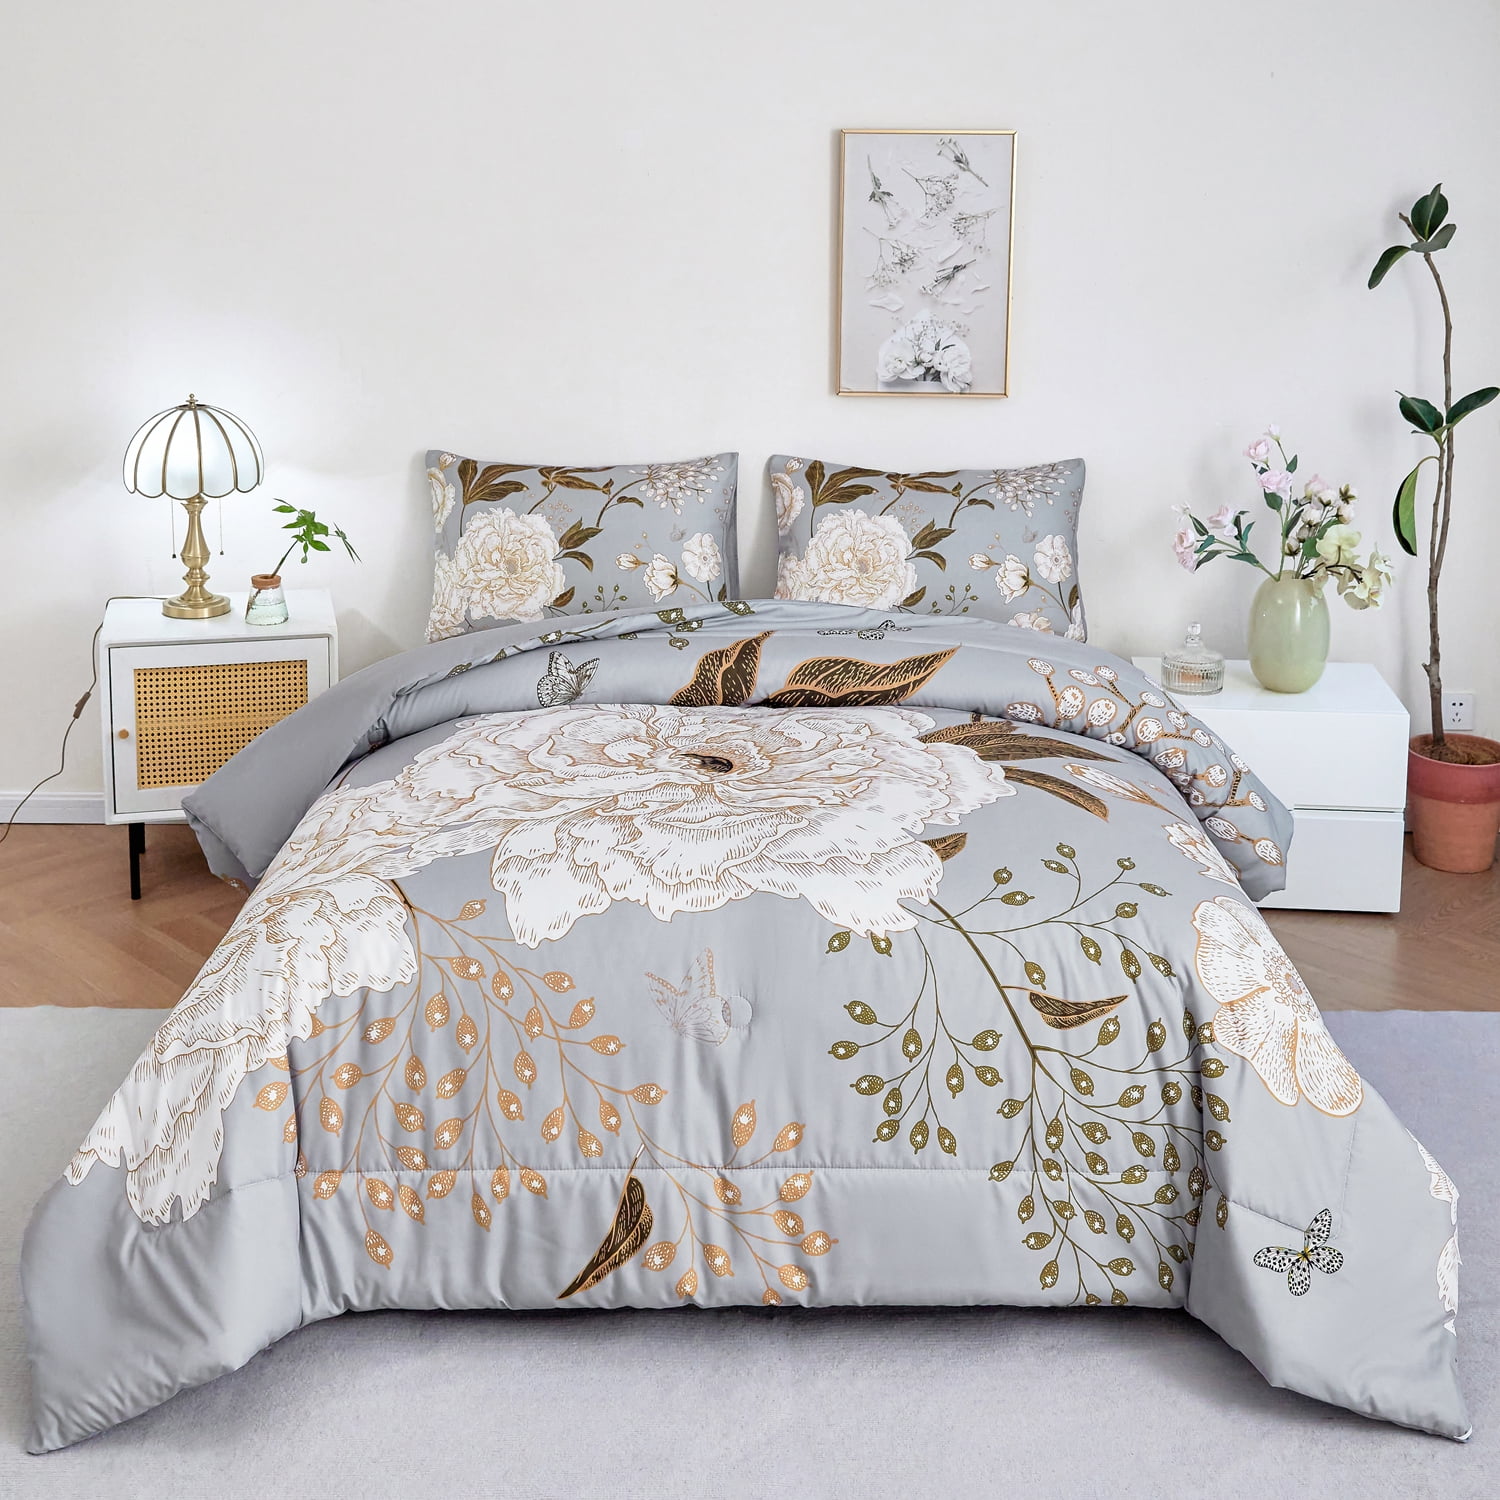 Brielle Home Gardiner Floral Printed Comforter Set - On Sale - Bed